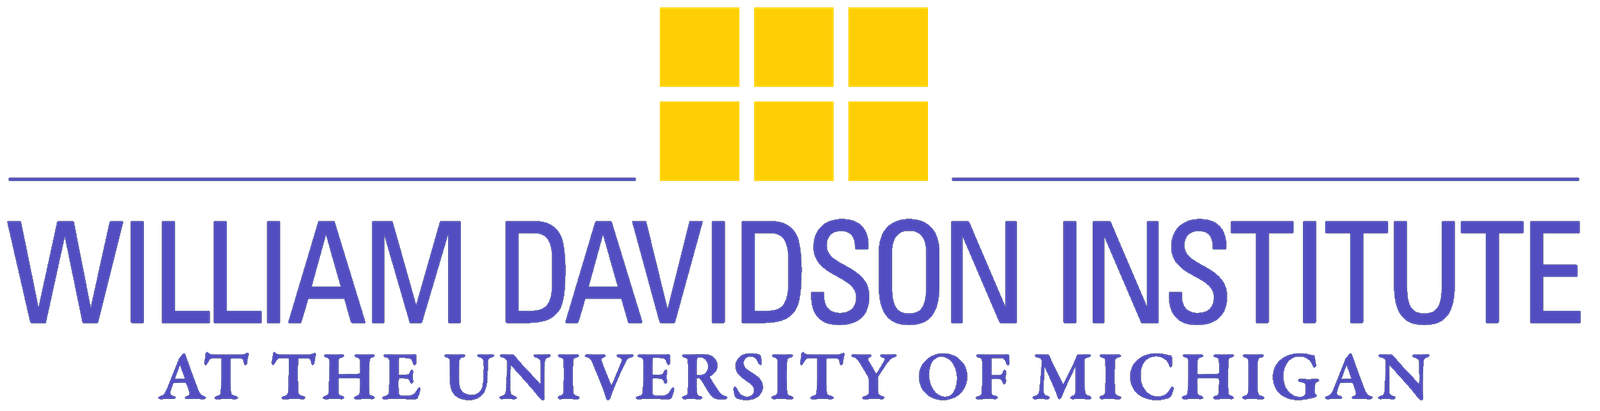 William Davidson Institute